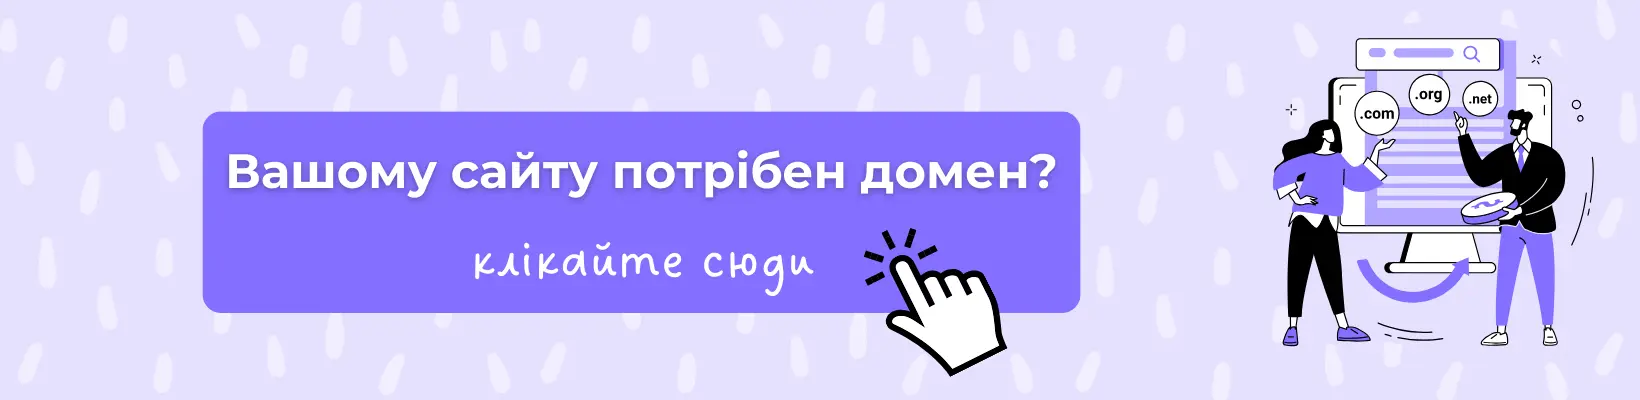 Купівля домену для сайту в Україні з повністю автоматизованим керуванням